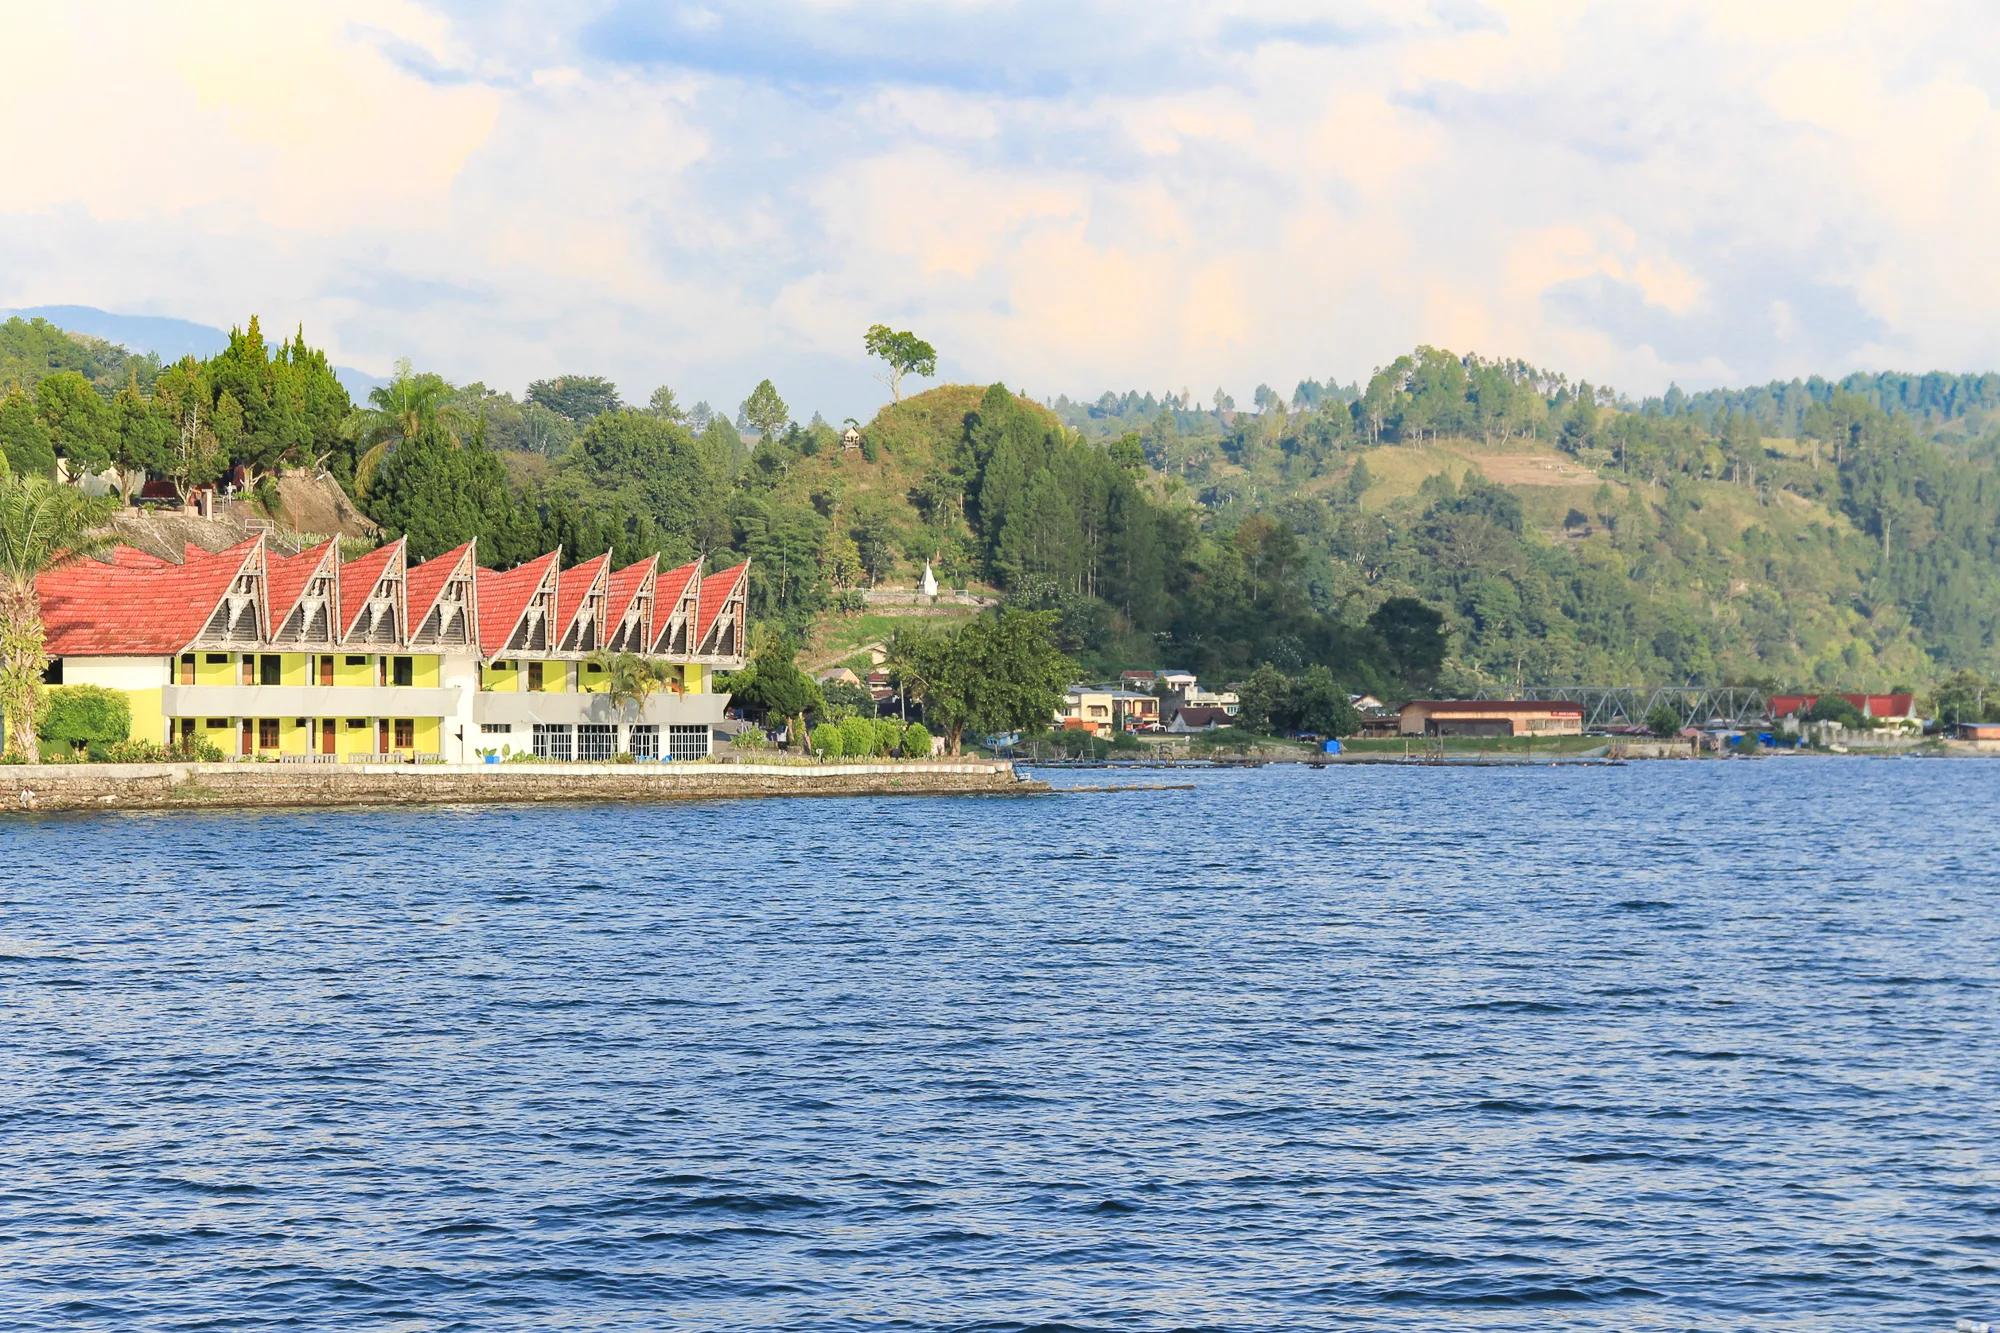 Lake Toba Samosir Tomok ferry